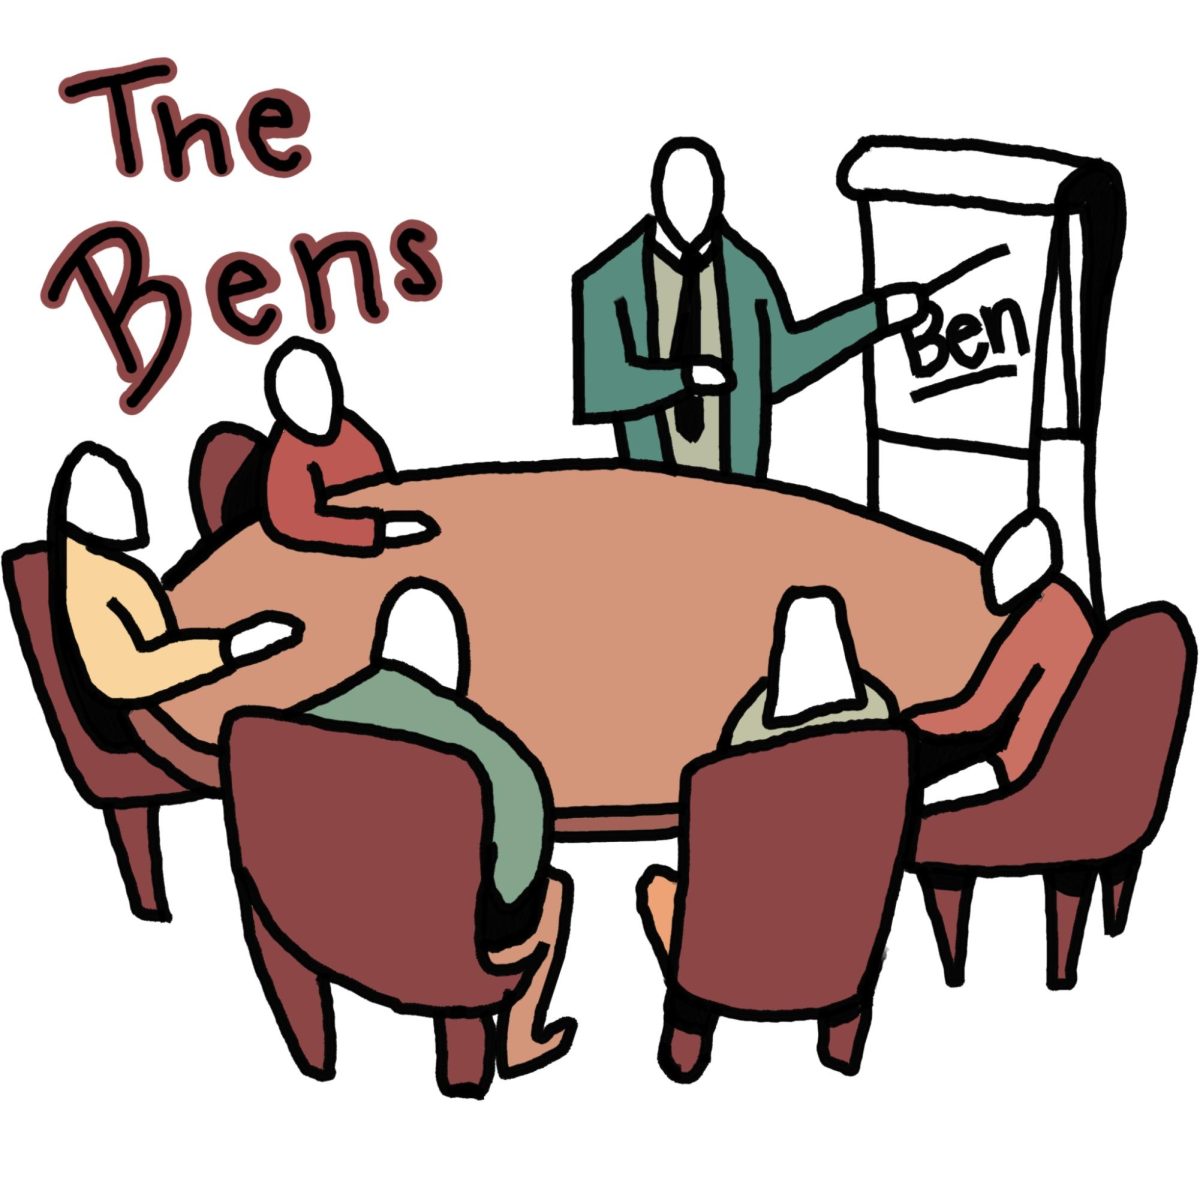 The benfidental benquet of Bens